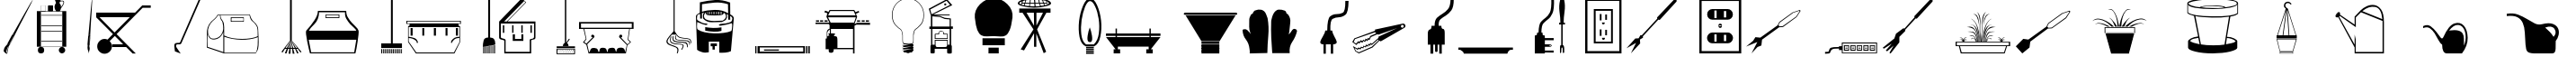 Пример написания английского алфавита шрифтом Tools